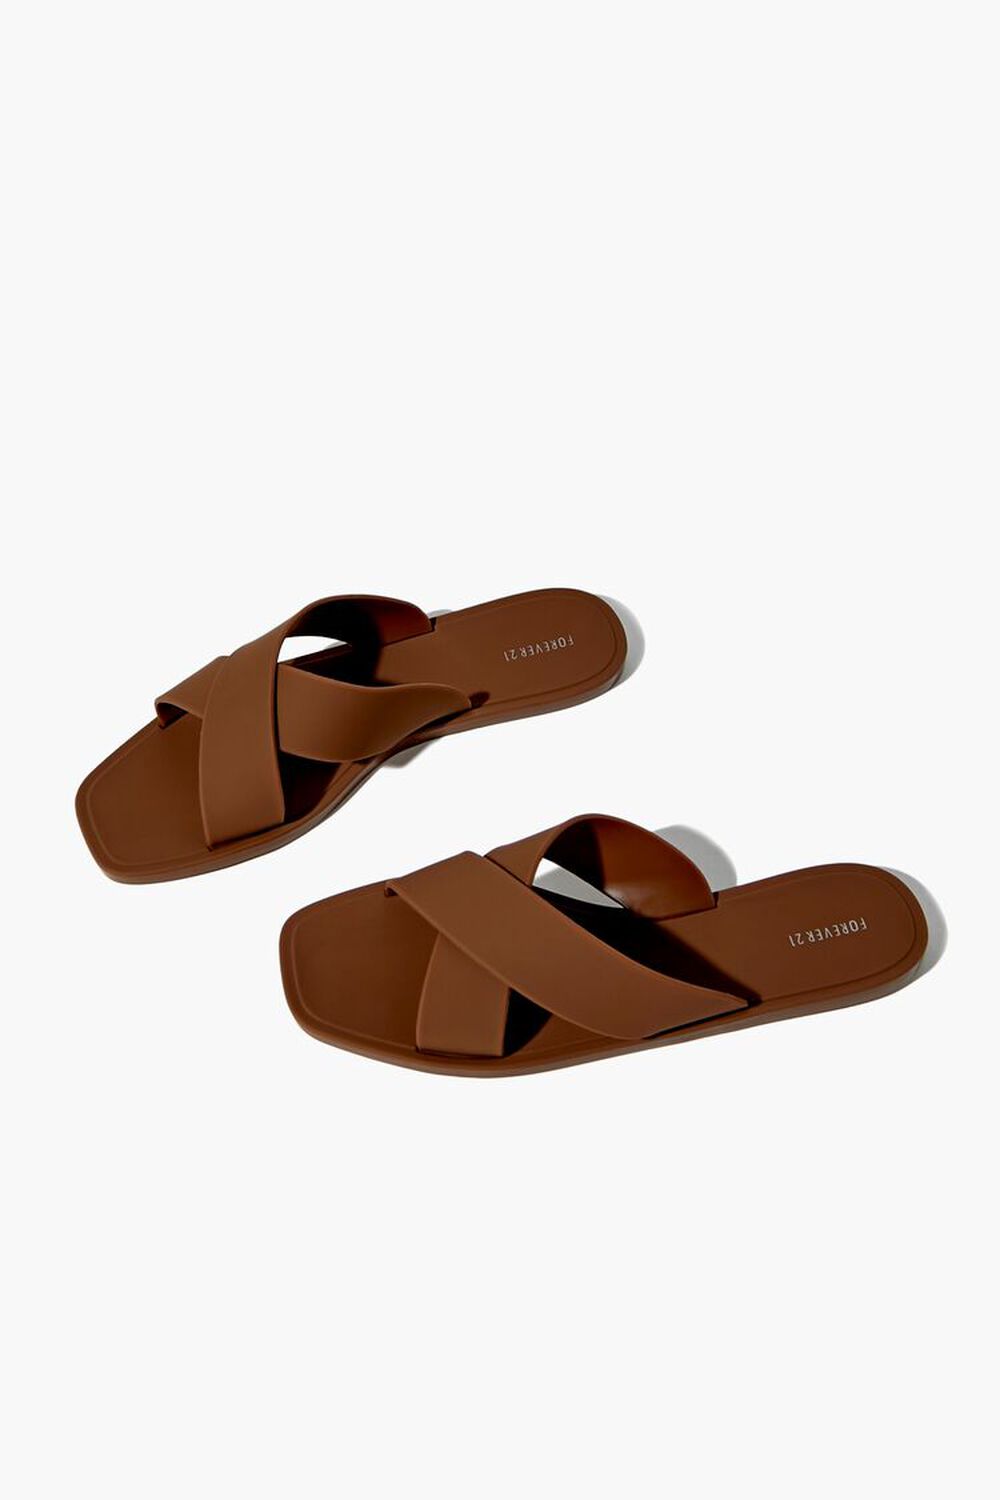 BROWN Crisscross Slip-On Sandals, image 1